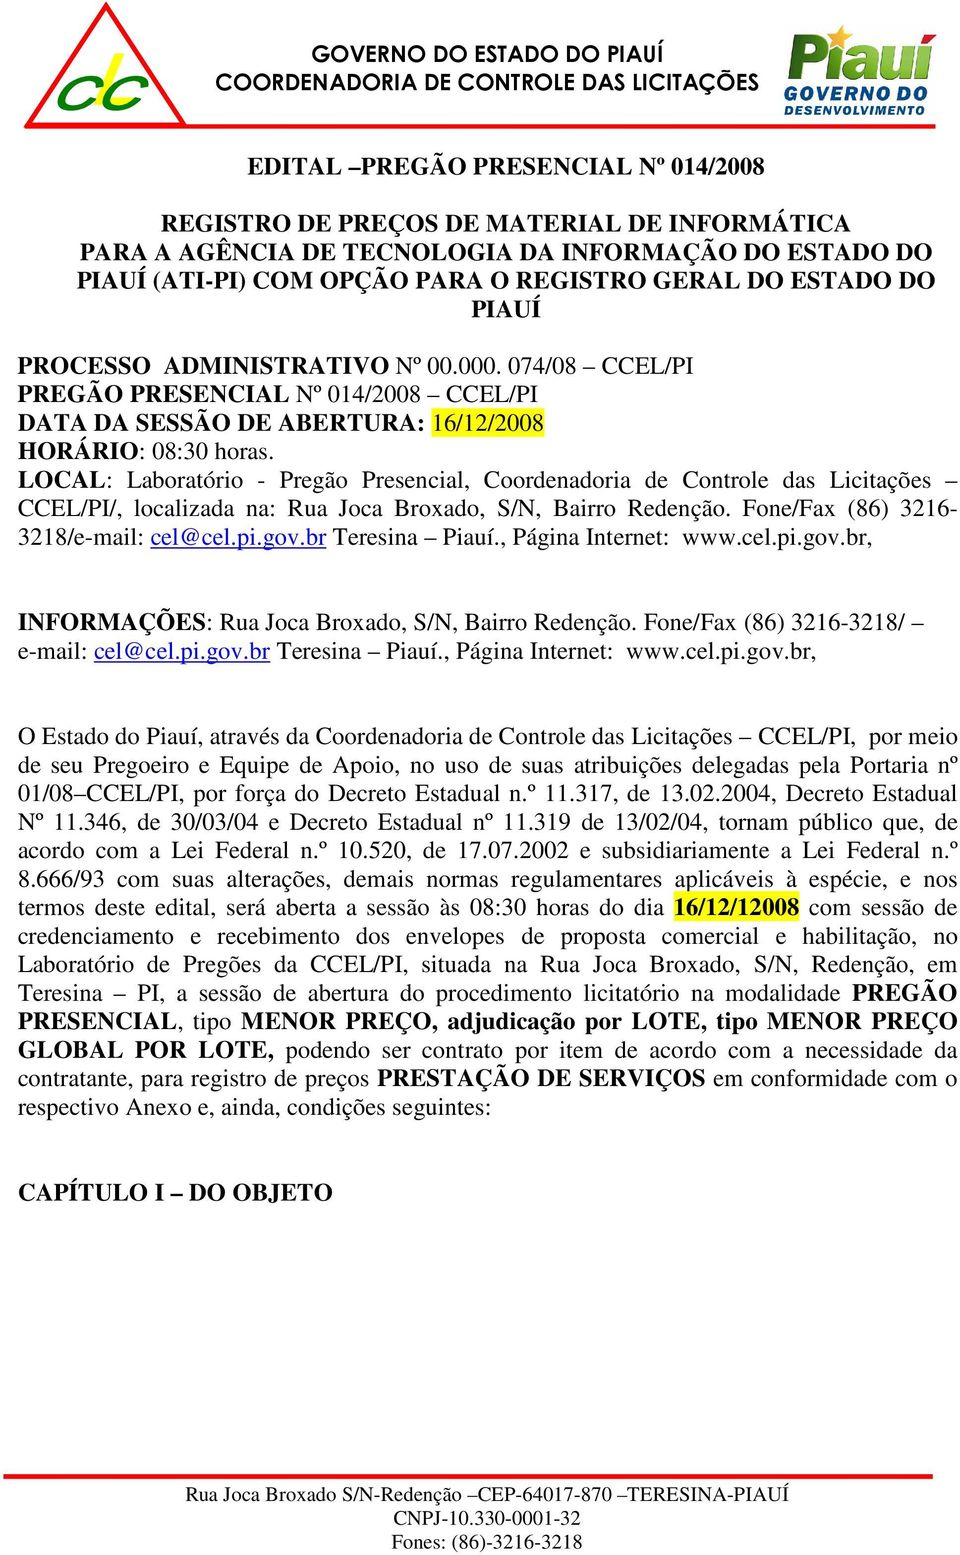 LOCAL: Laboratório - Pregão Presencial, Coordenadoria de Controle das Licitações CCEL/PI/, localizada na: Rua Joca Broxado, S/N, Bairro Redenção. Fone/Fax (86) 3216-3218/e-mail: cel@cel.pi.gov.